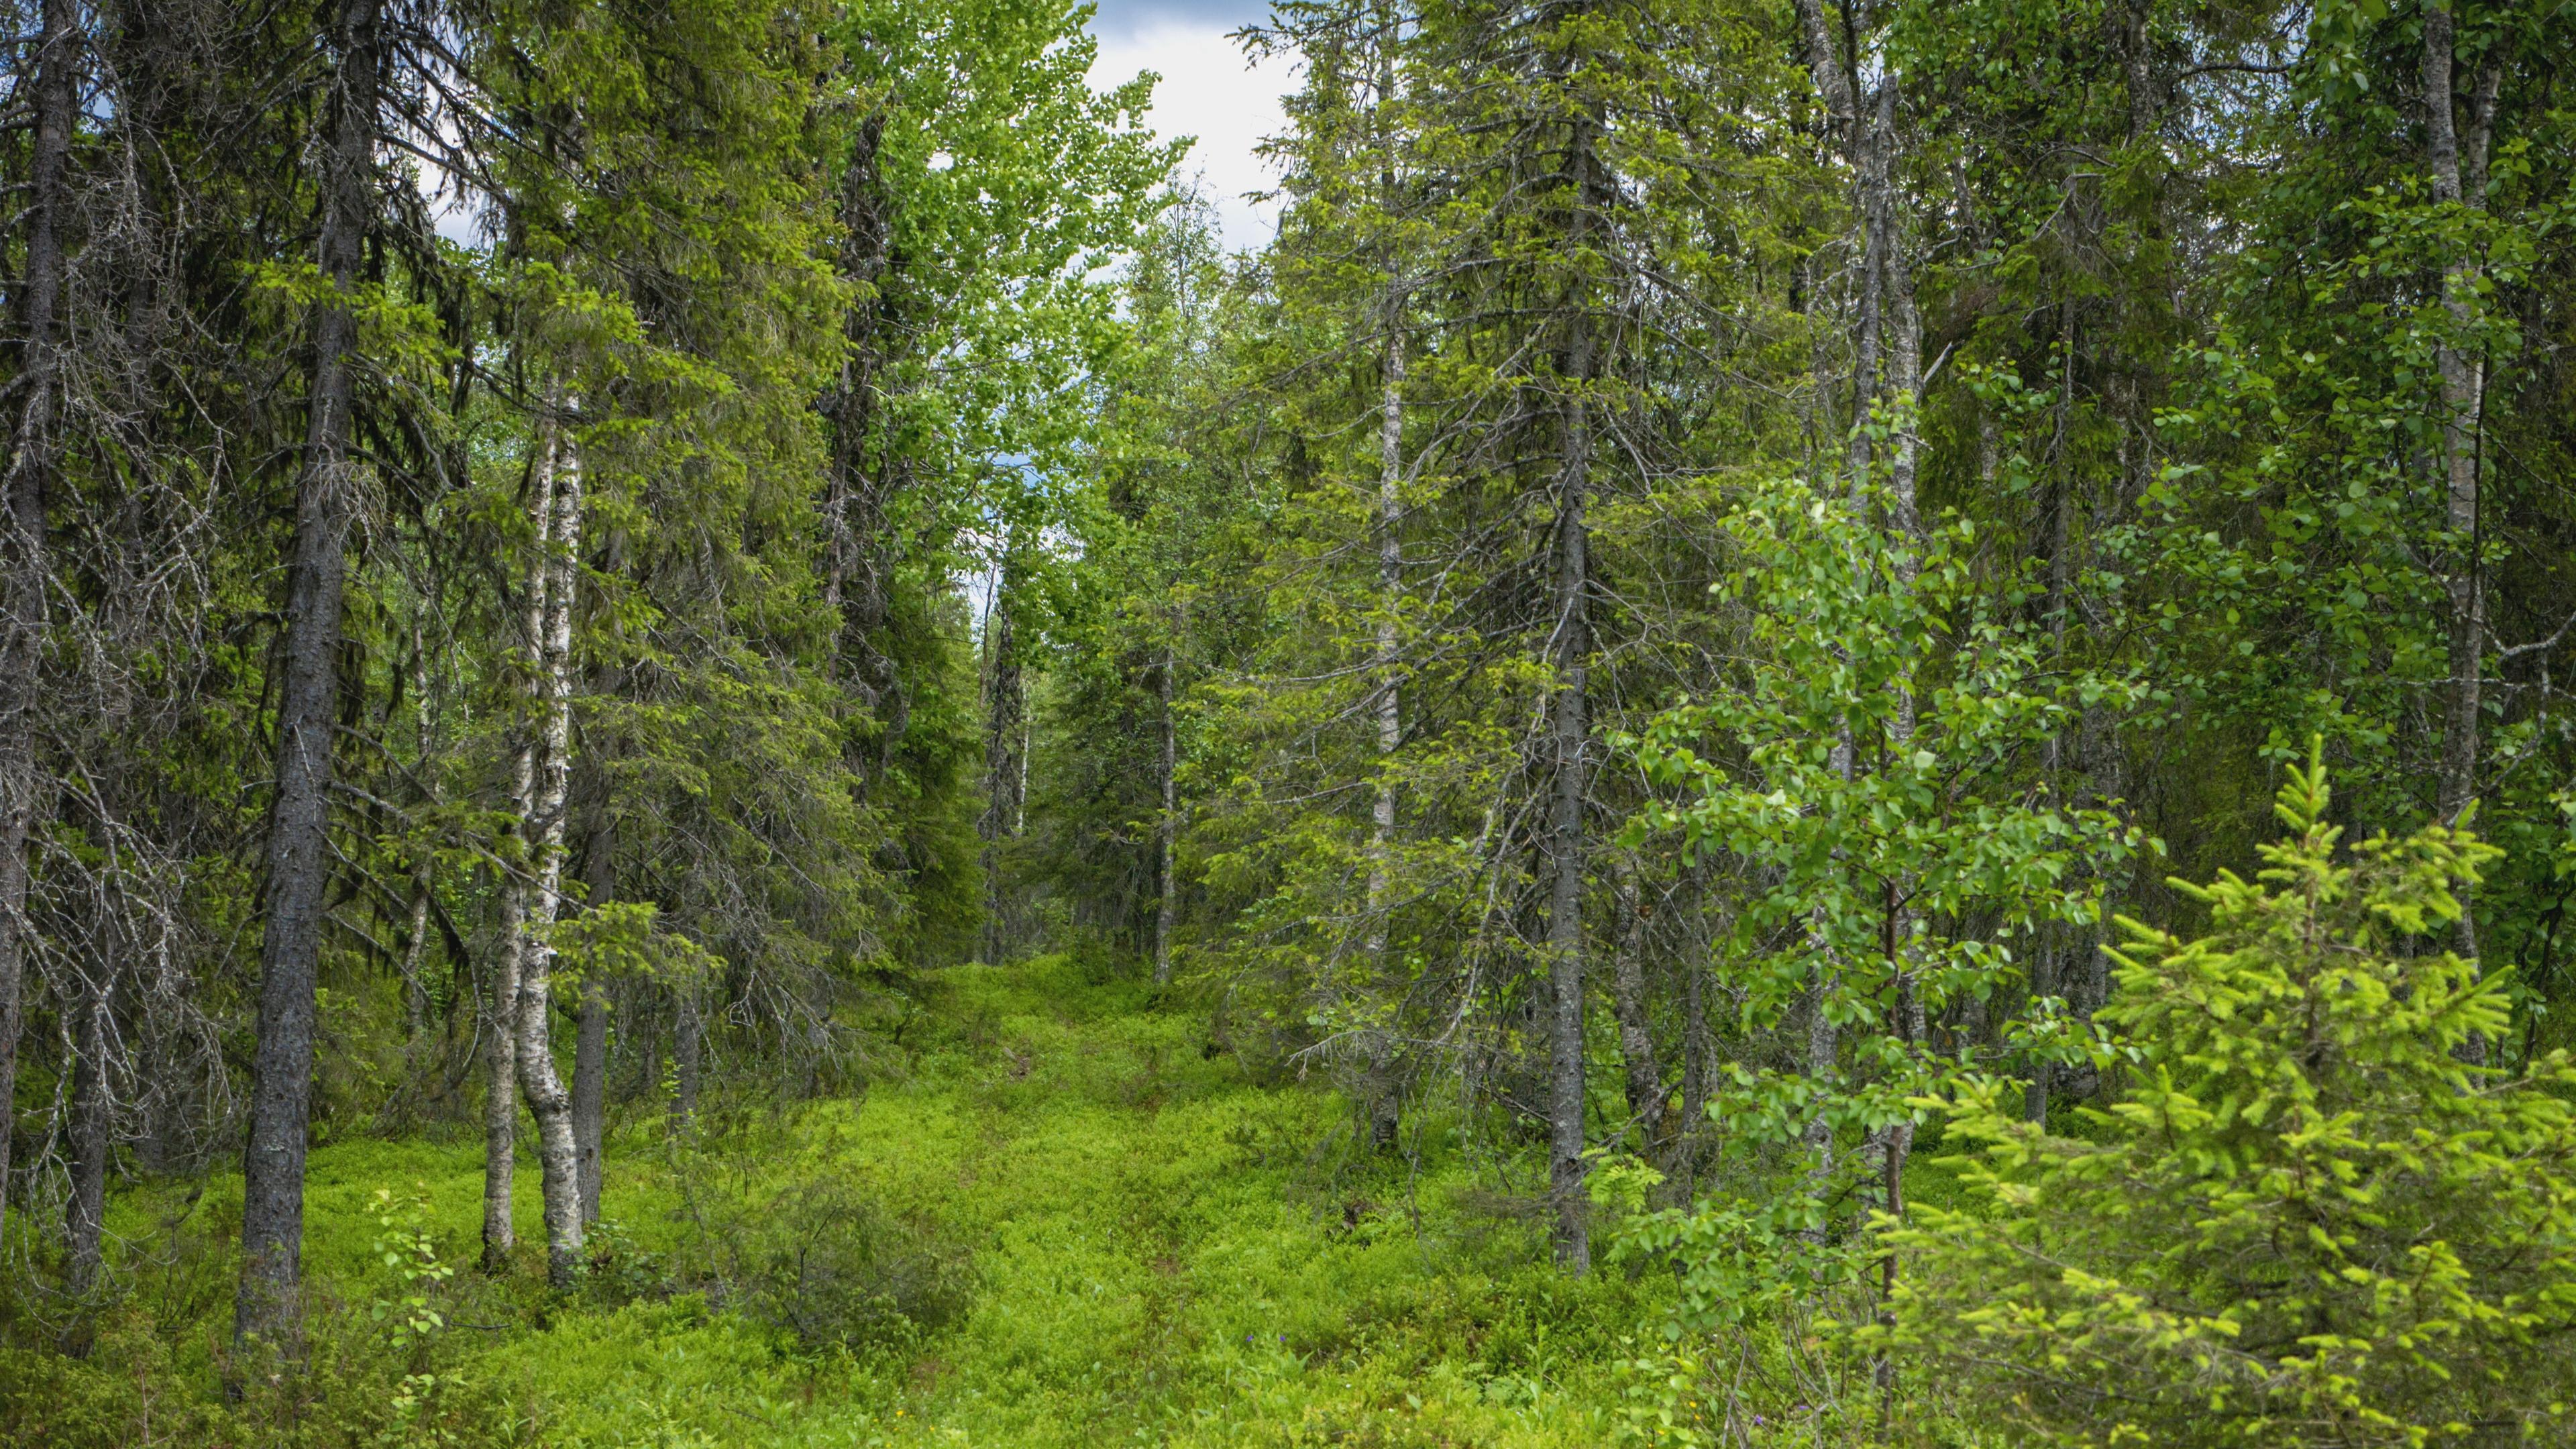 Konsekvenserna av dagens skogsbruk är förödande för svensk natur. De tidigare självklara hänsynen finns inte längre, menar artikelförfattaren. Foto: Bilbo Lantto